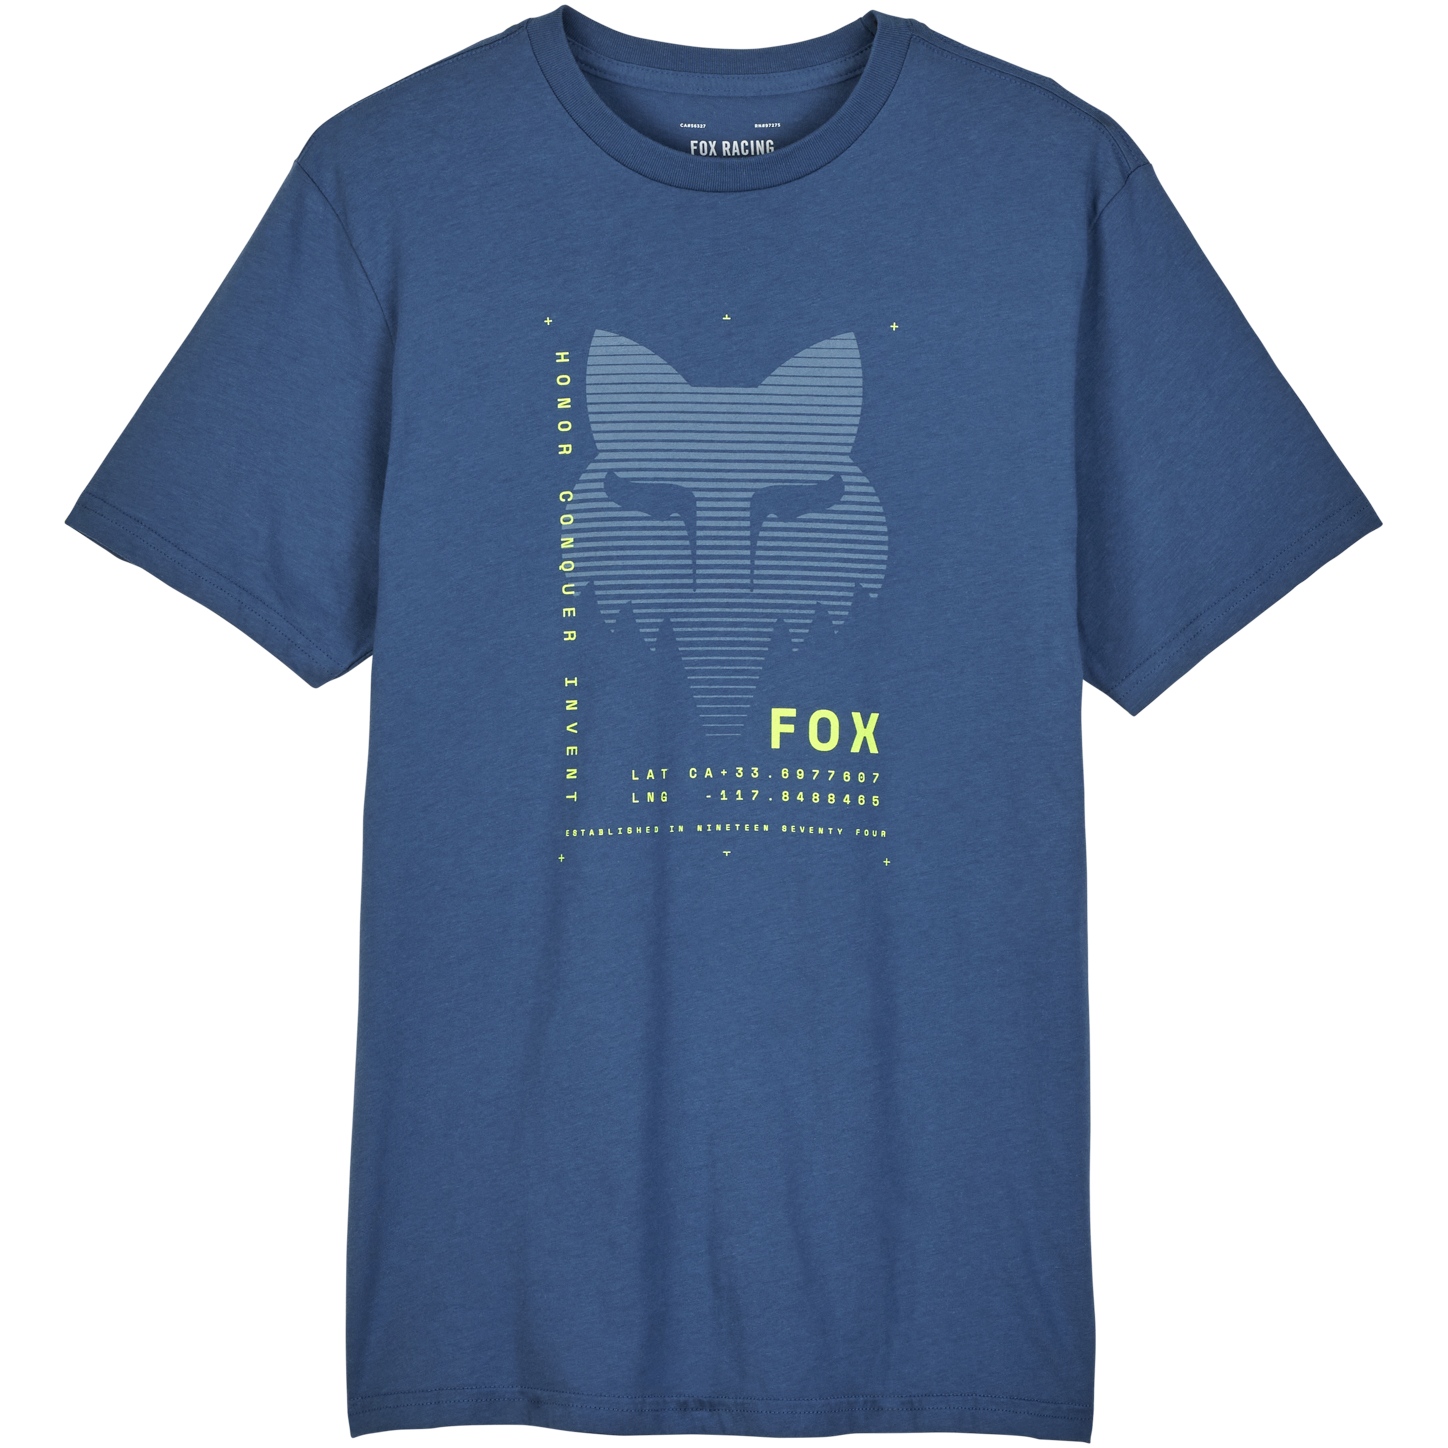 Produktbild von FOX Dispute Premium Kurzarmshirt Herren - indigo